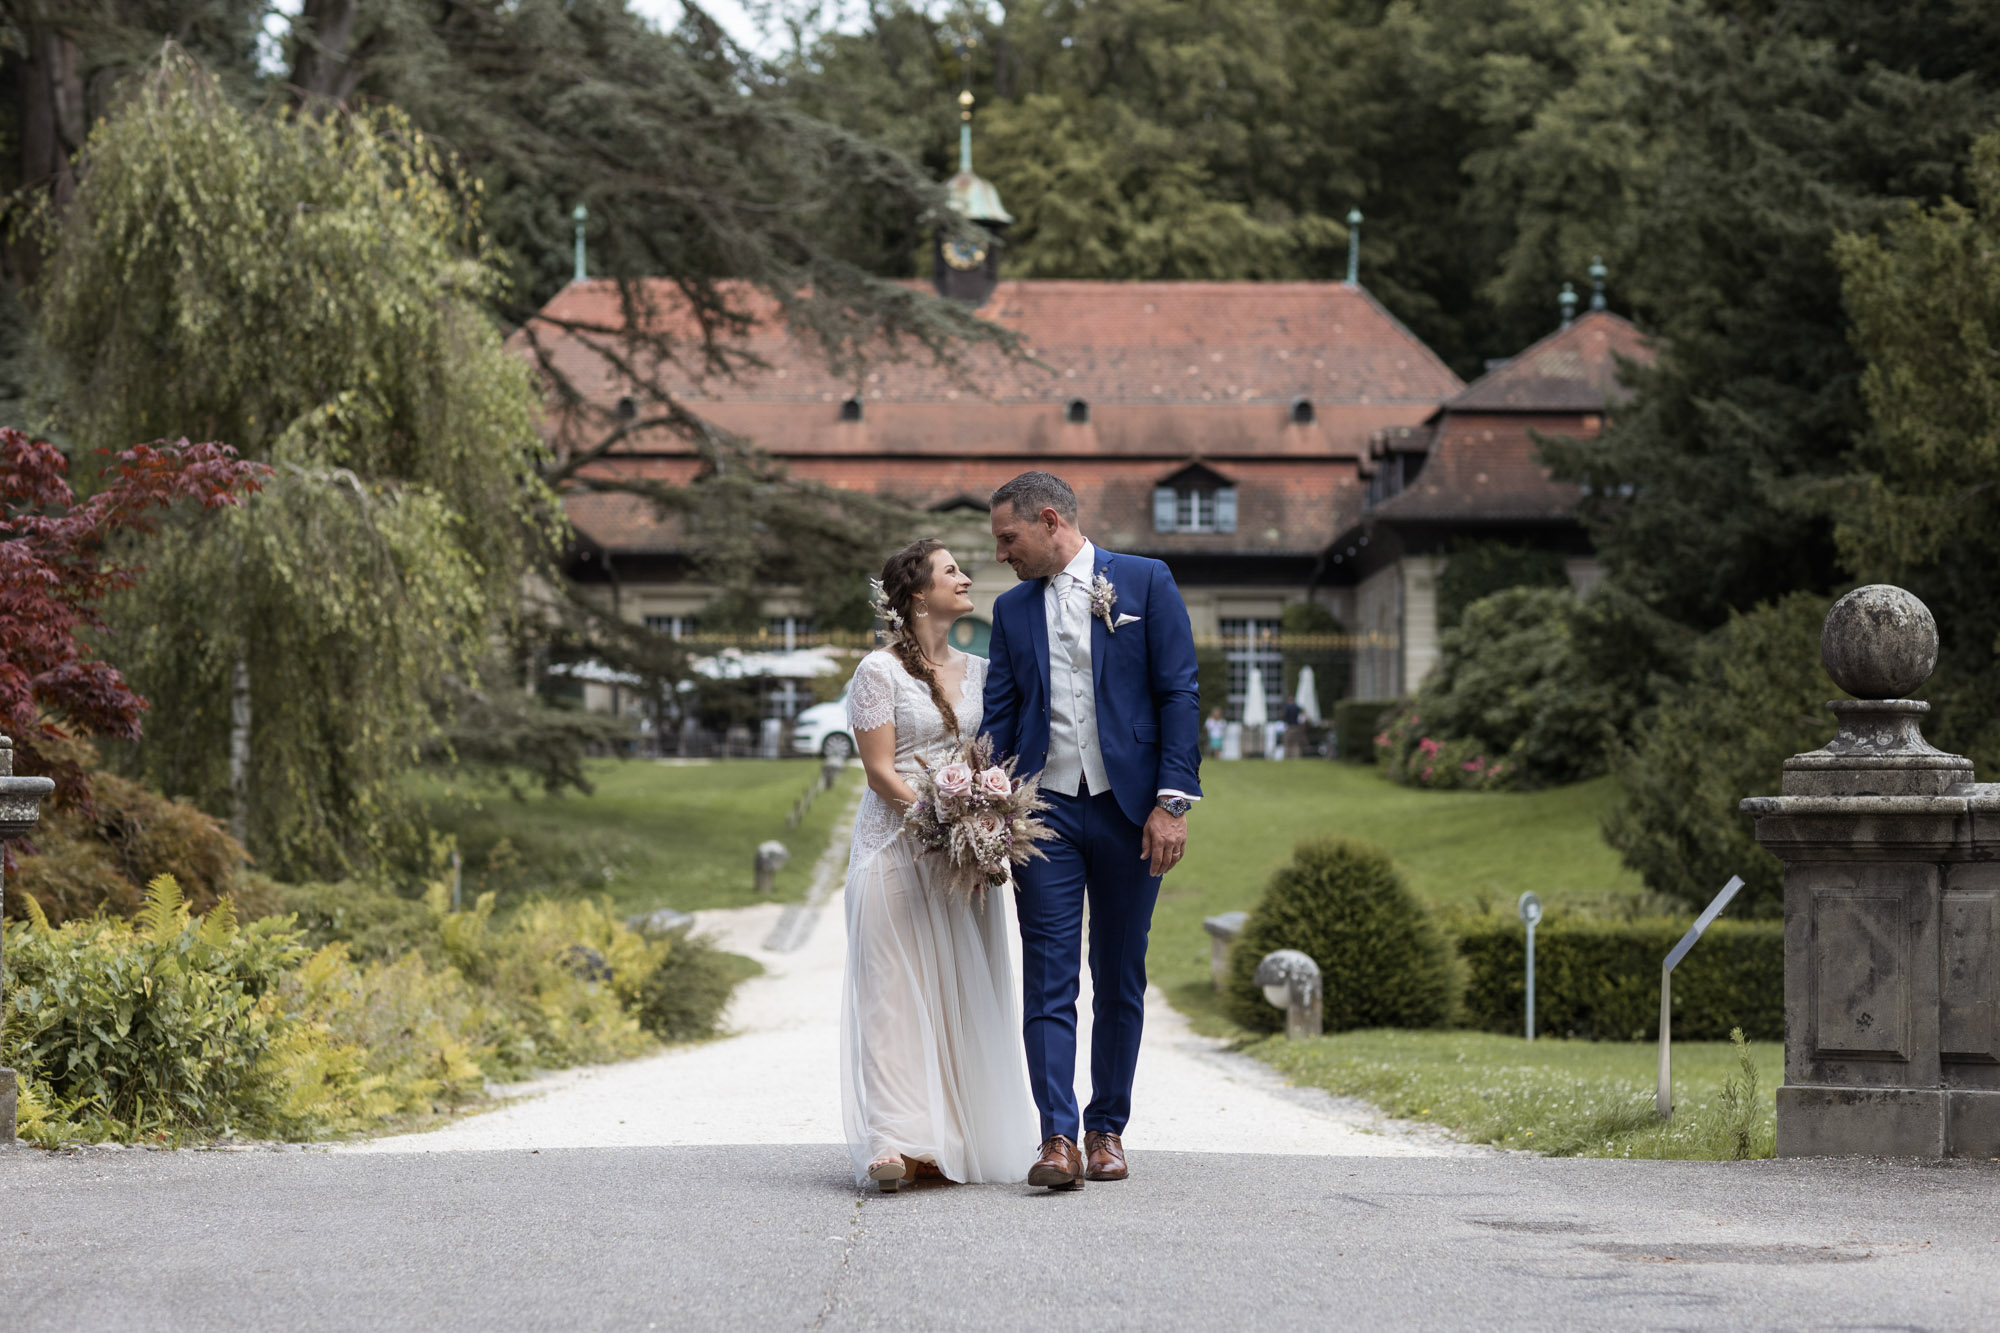 Hochzeitspaar Fotoshooting im Wenkenpark - Hochzeit in der Villa Wenkenhof in Riehen - Hochzeitsfotografen Basel